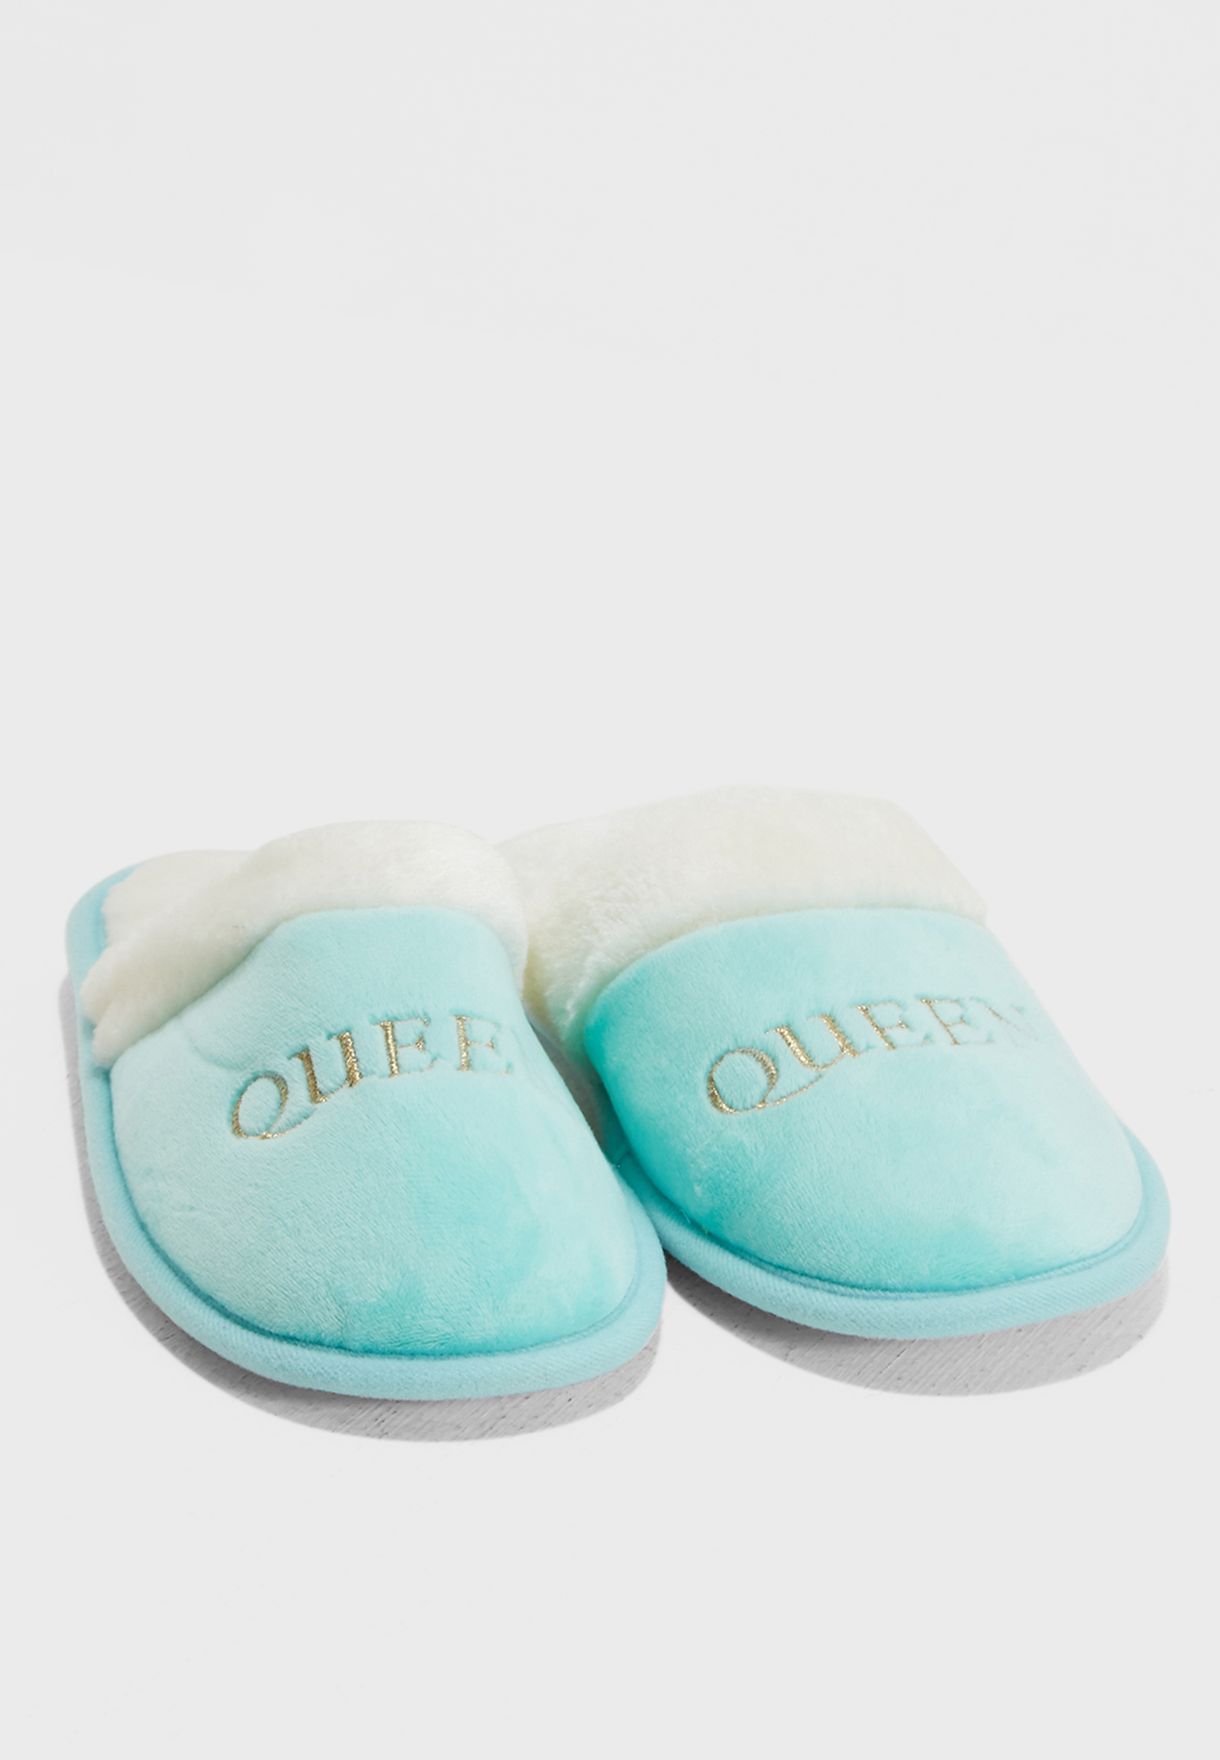 typo slippers